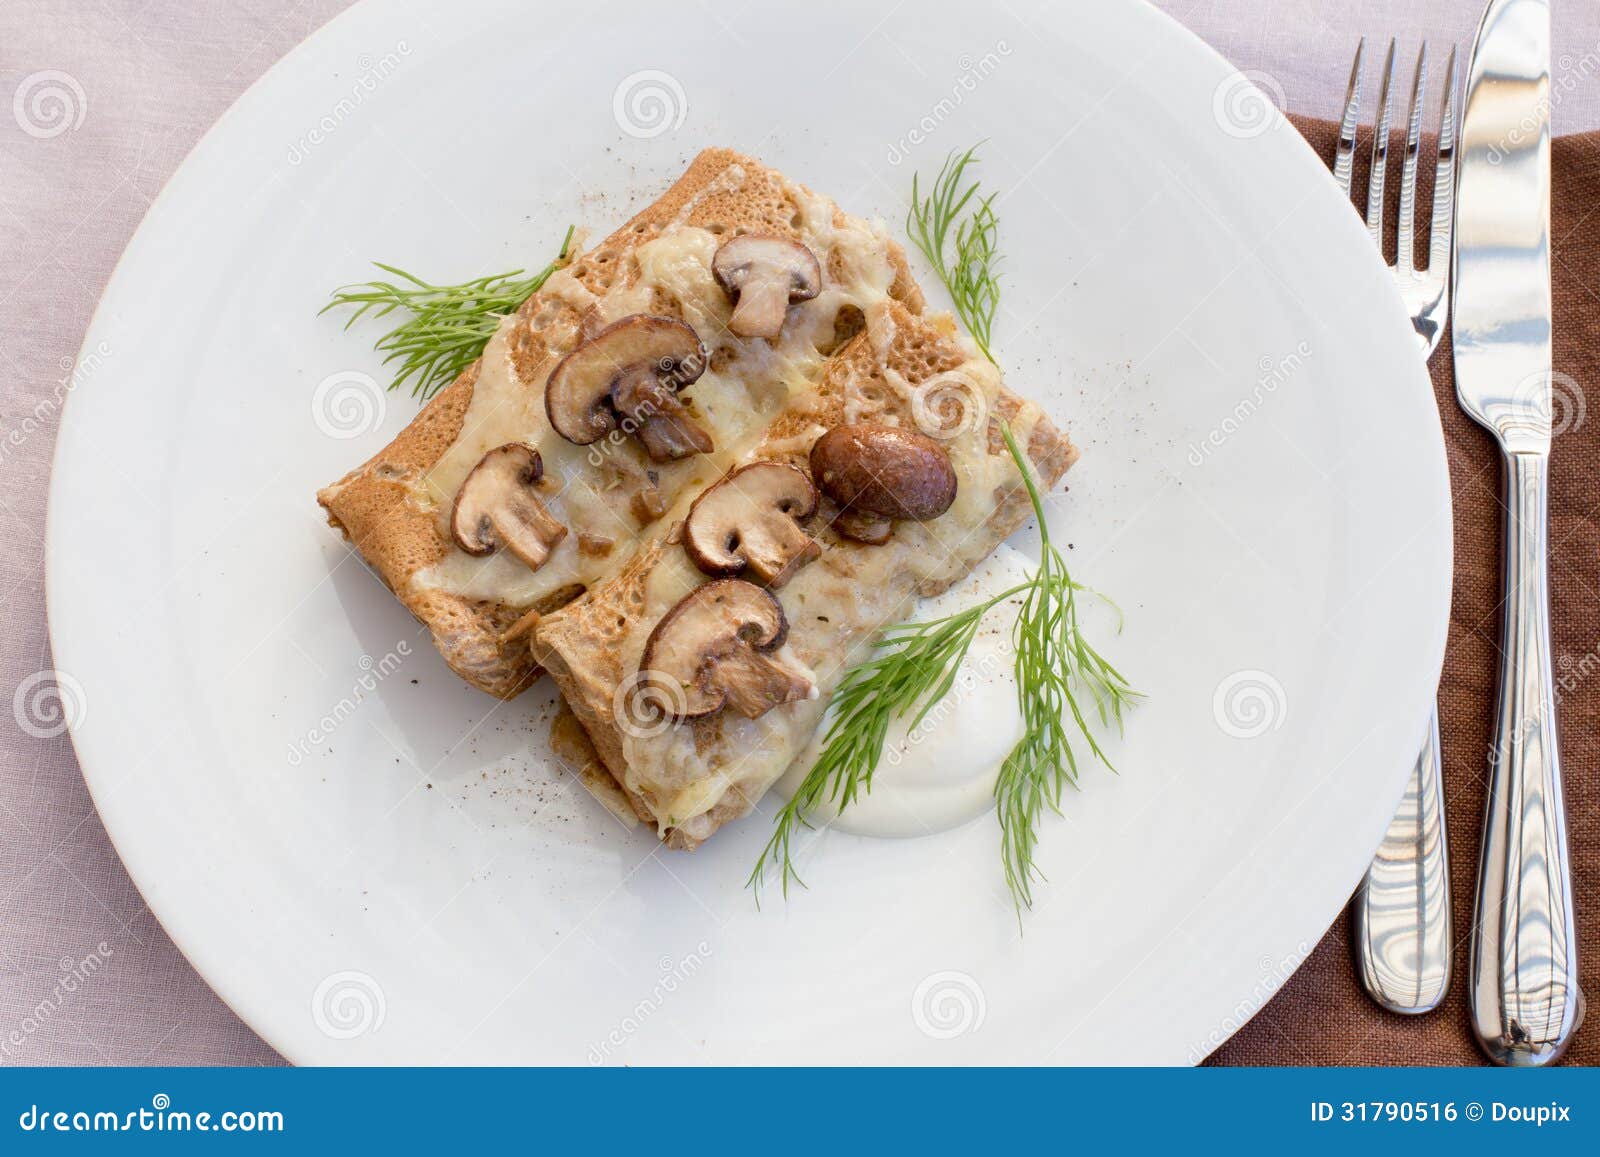 Pfannkuchen Mit Pilzen Crespelle Al Funghi — Rezepte Suchen